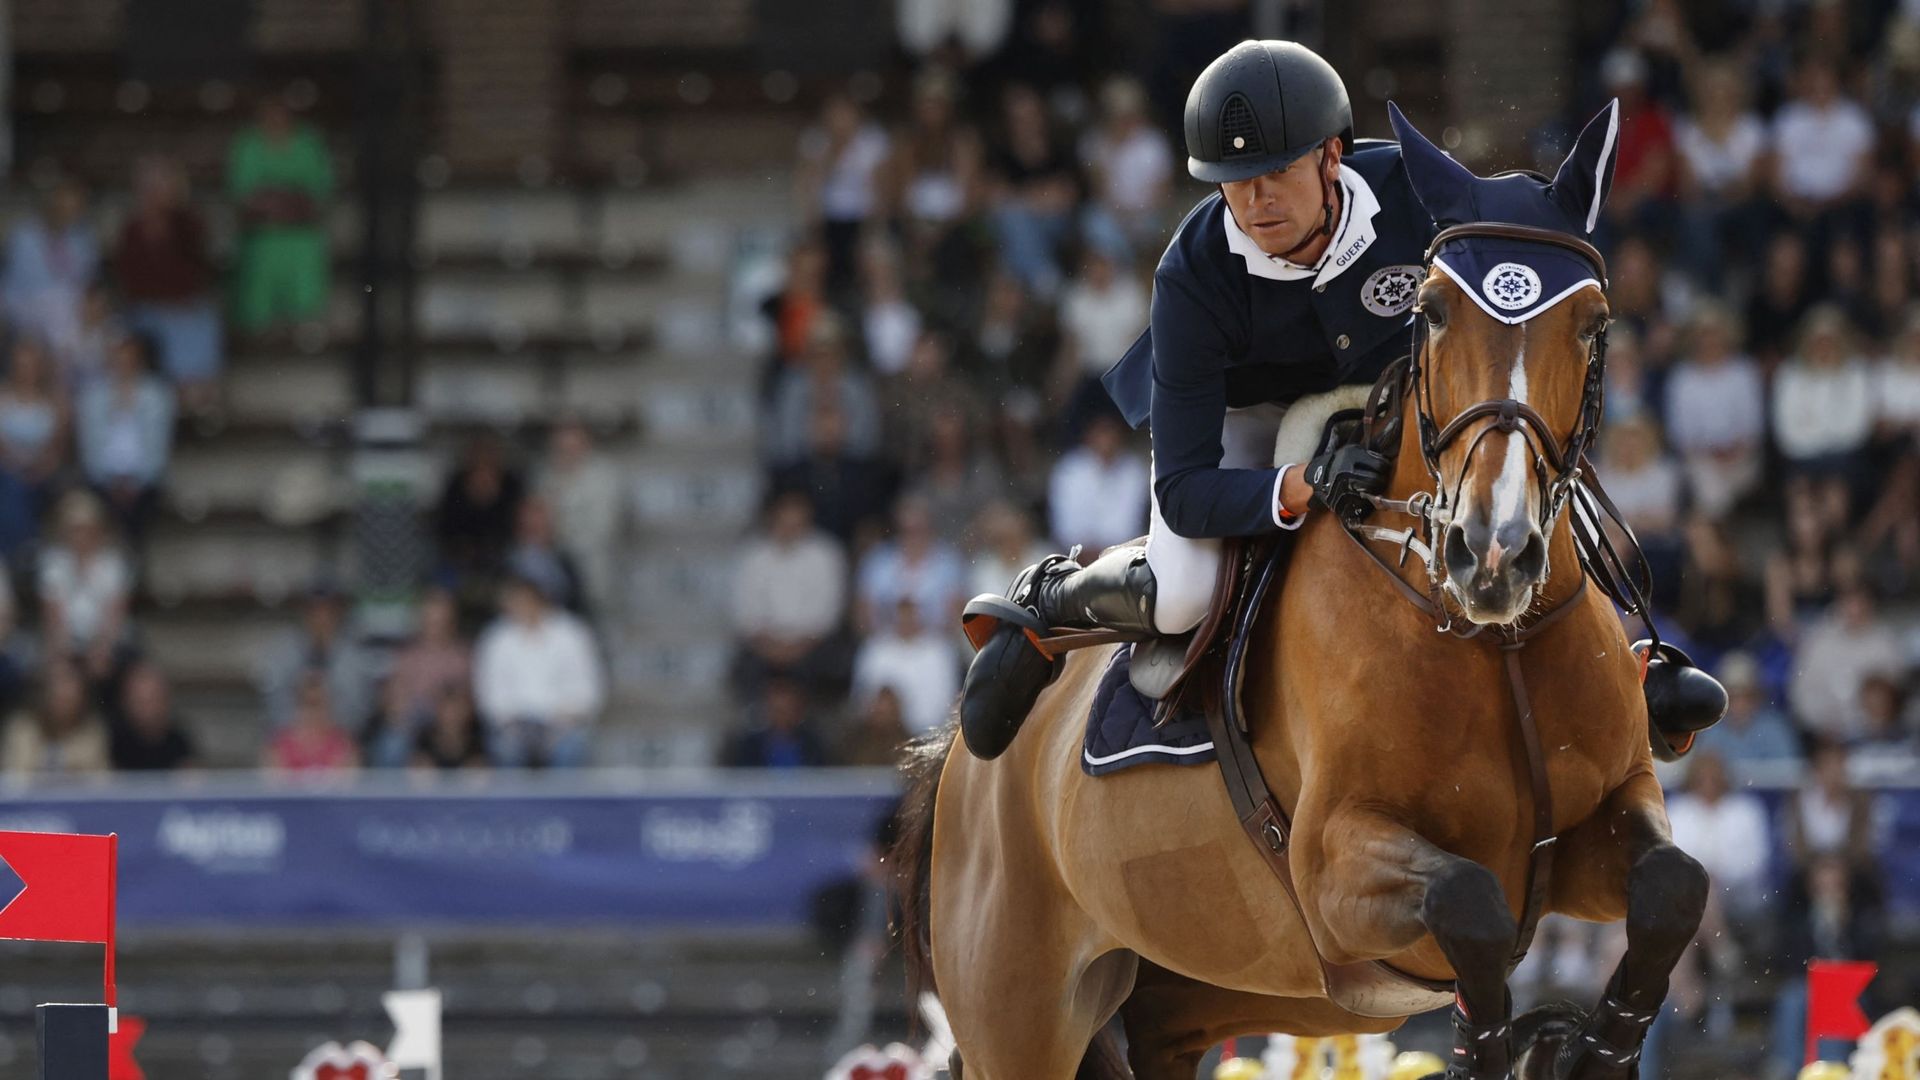 La Belgique occupe la 5e place du classement par pays en sauts d’obstacles aux championnats du monde d’équitation jeudi à Herning au Danemark, à l’issue de la 2e des trois épreuves au programme.